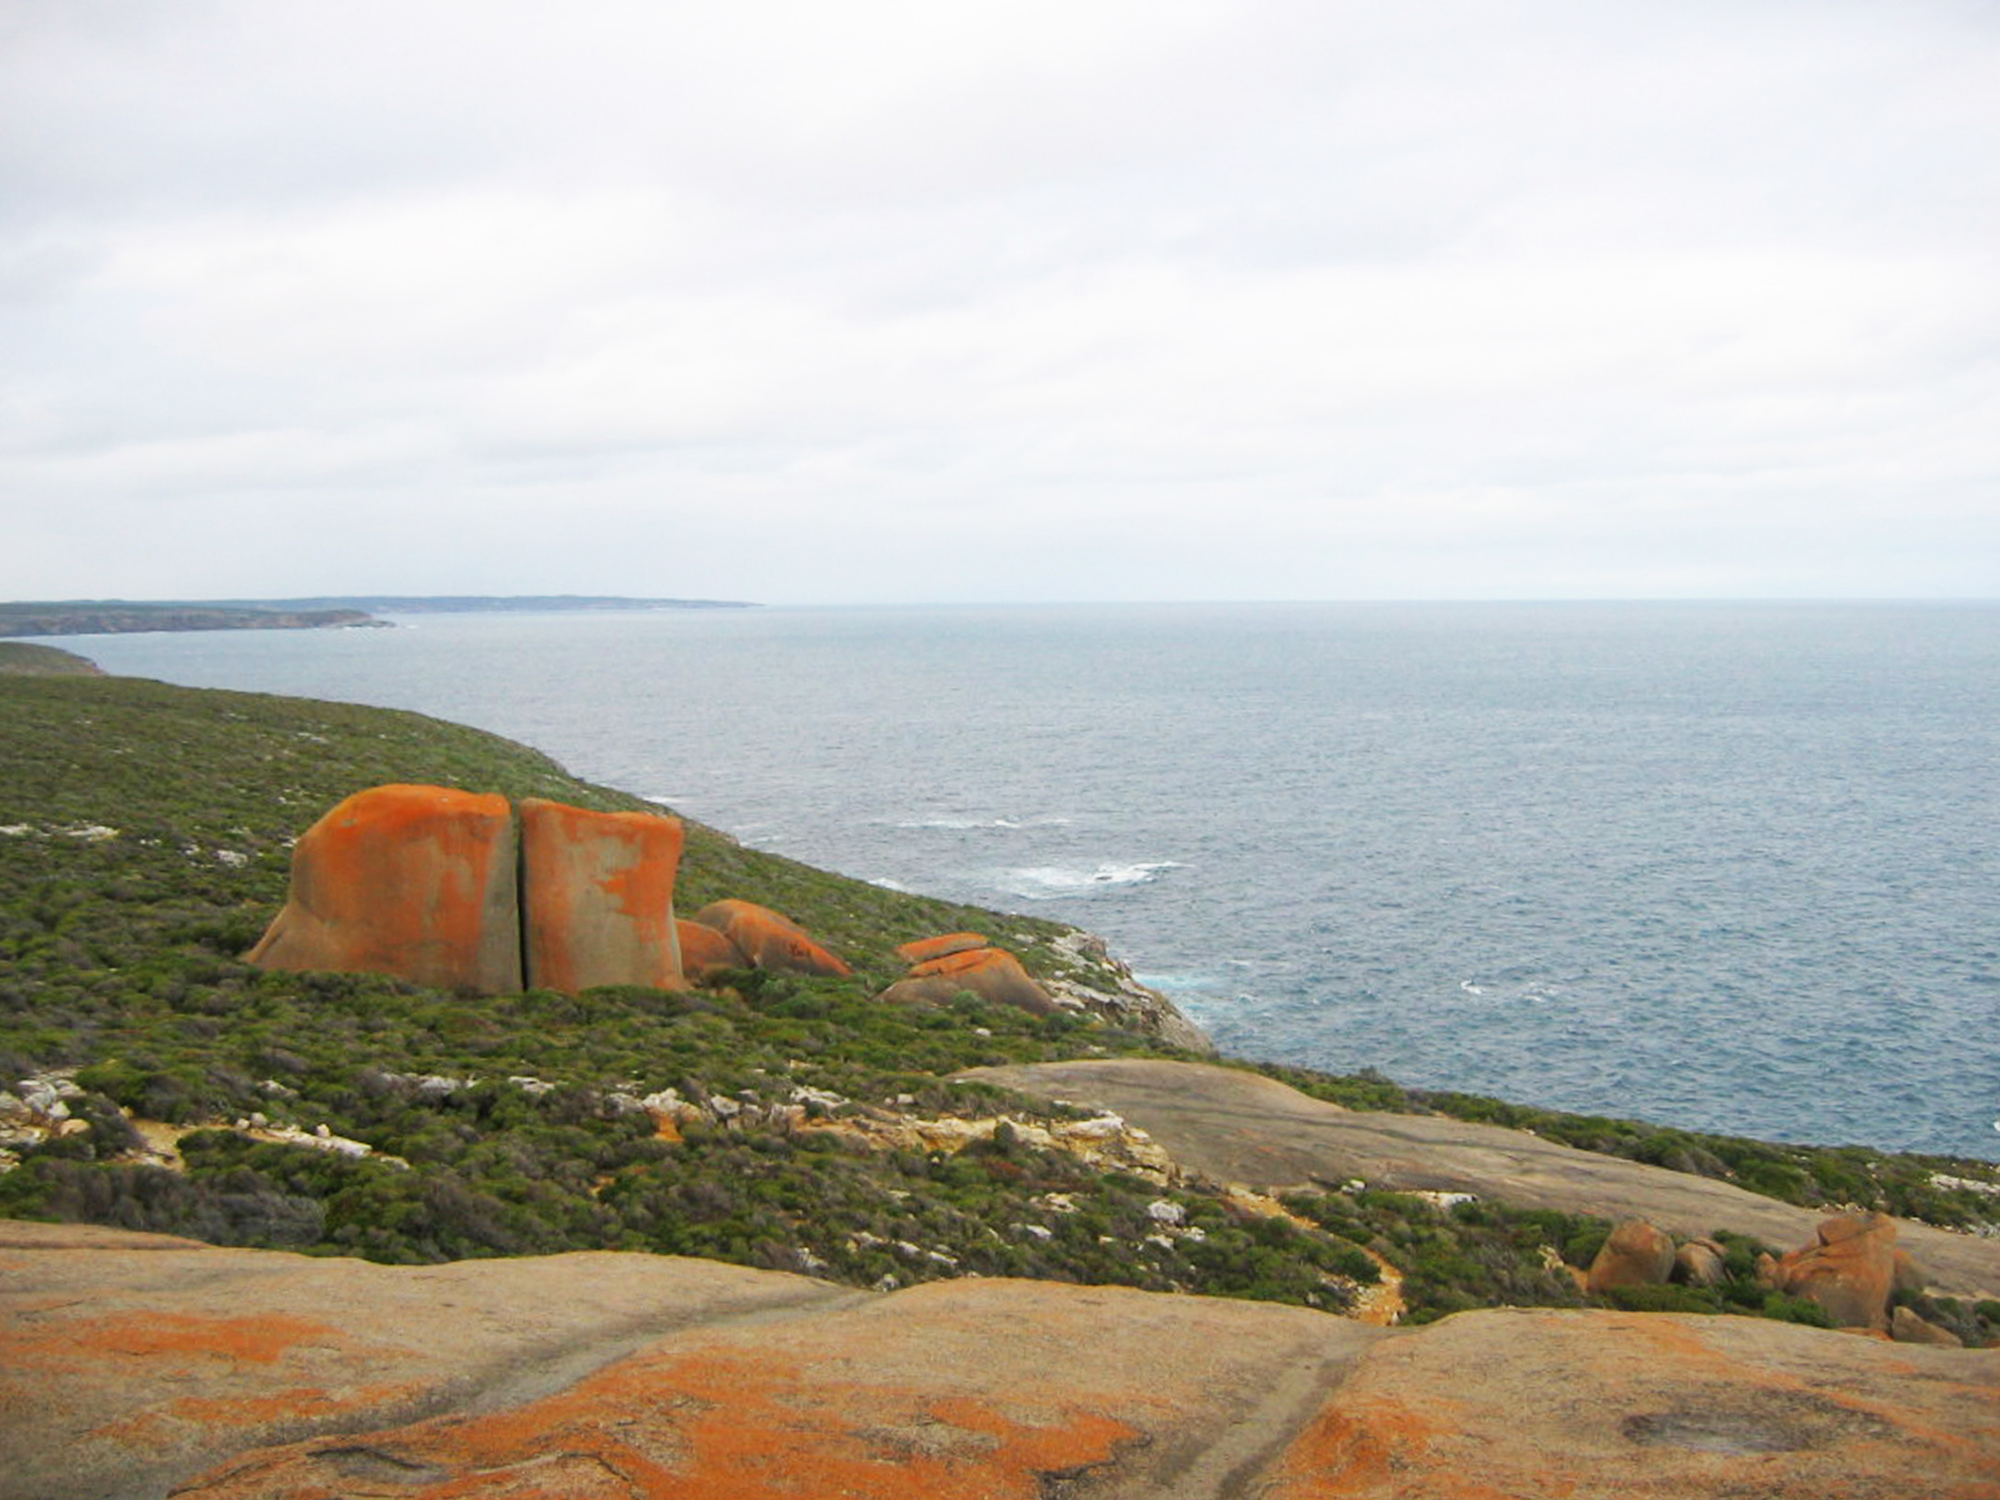 Road trip en Australie - Kangaroo Island